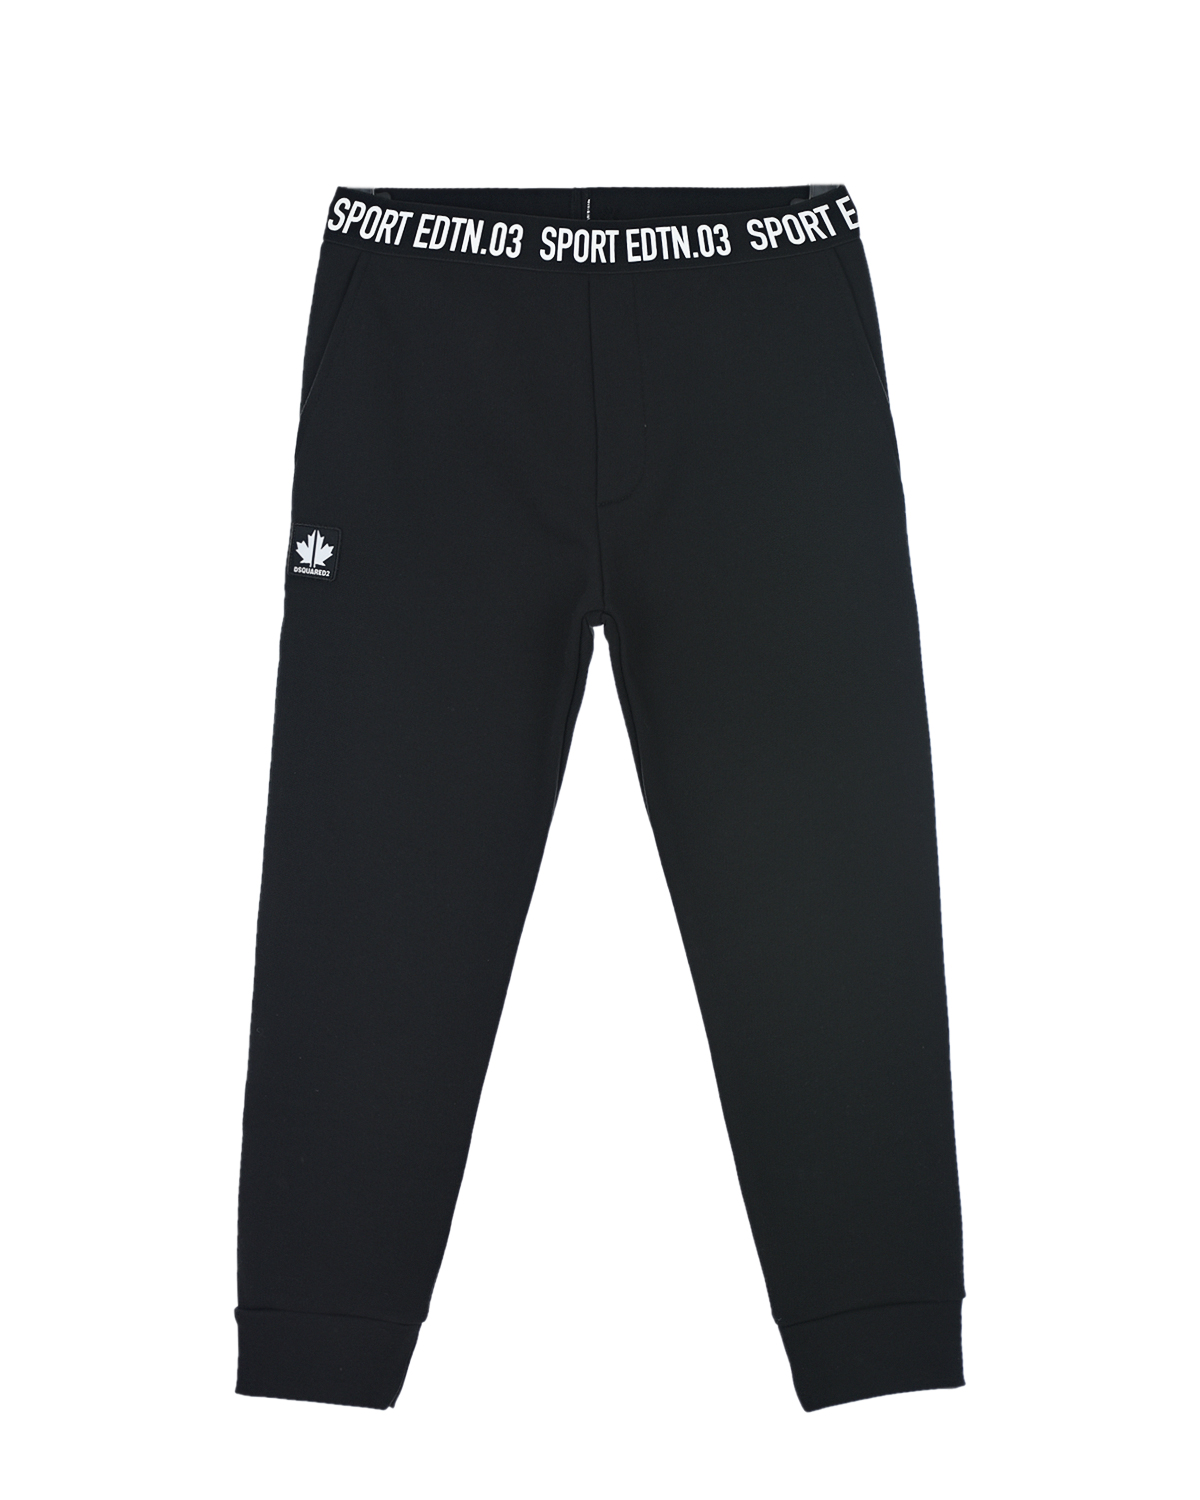 Черные спортивные брюки sport edtn 03 Dsquared2 детские, размер 152, цвет черный - фото 1